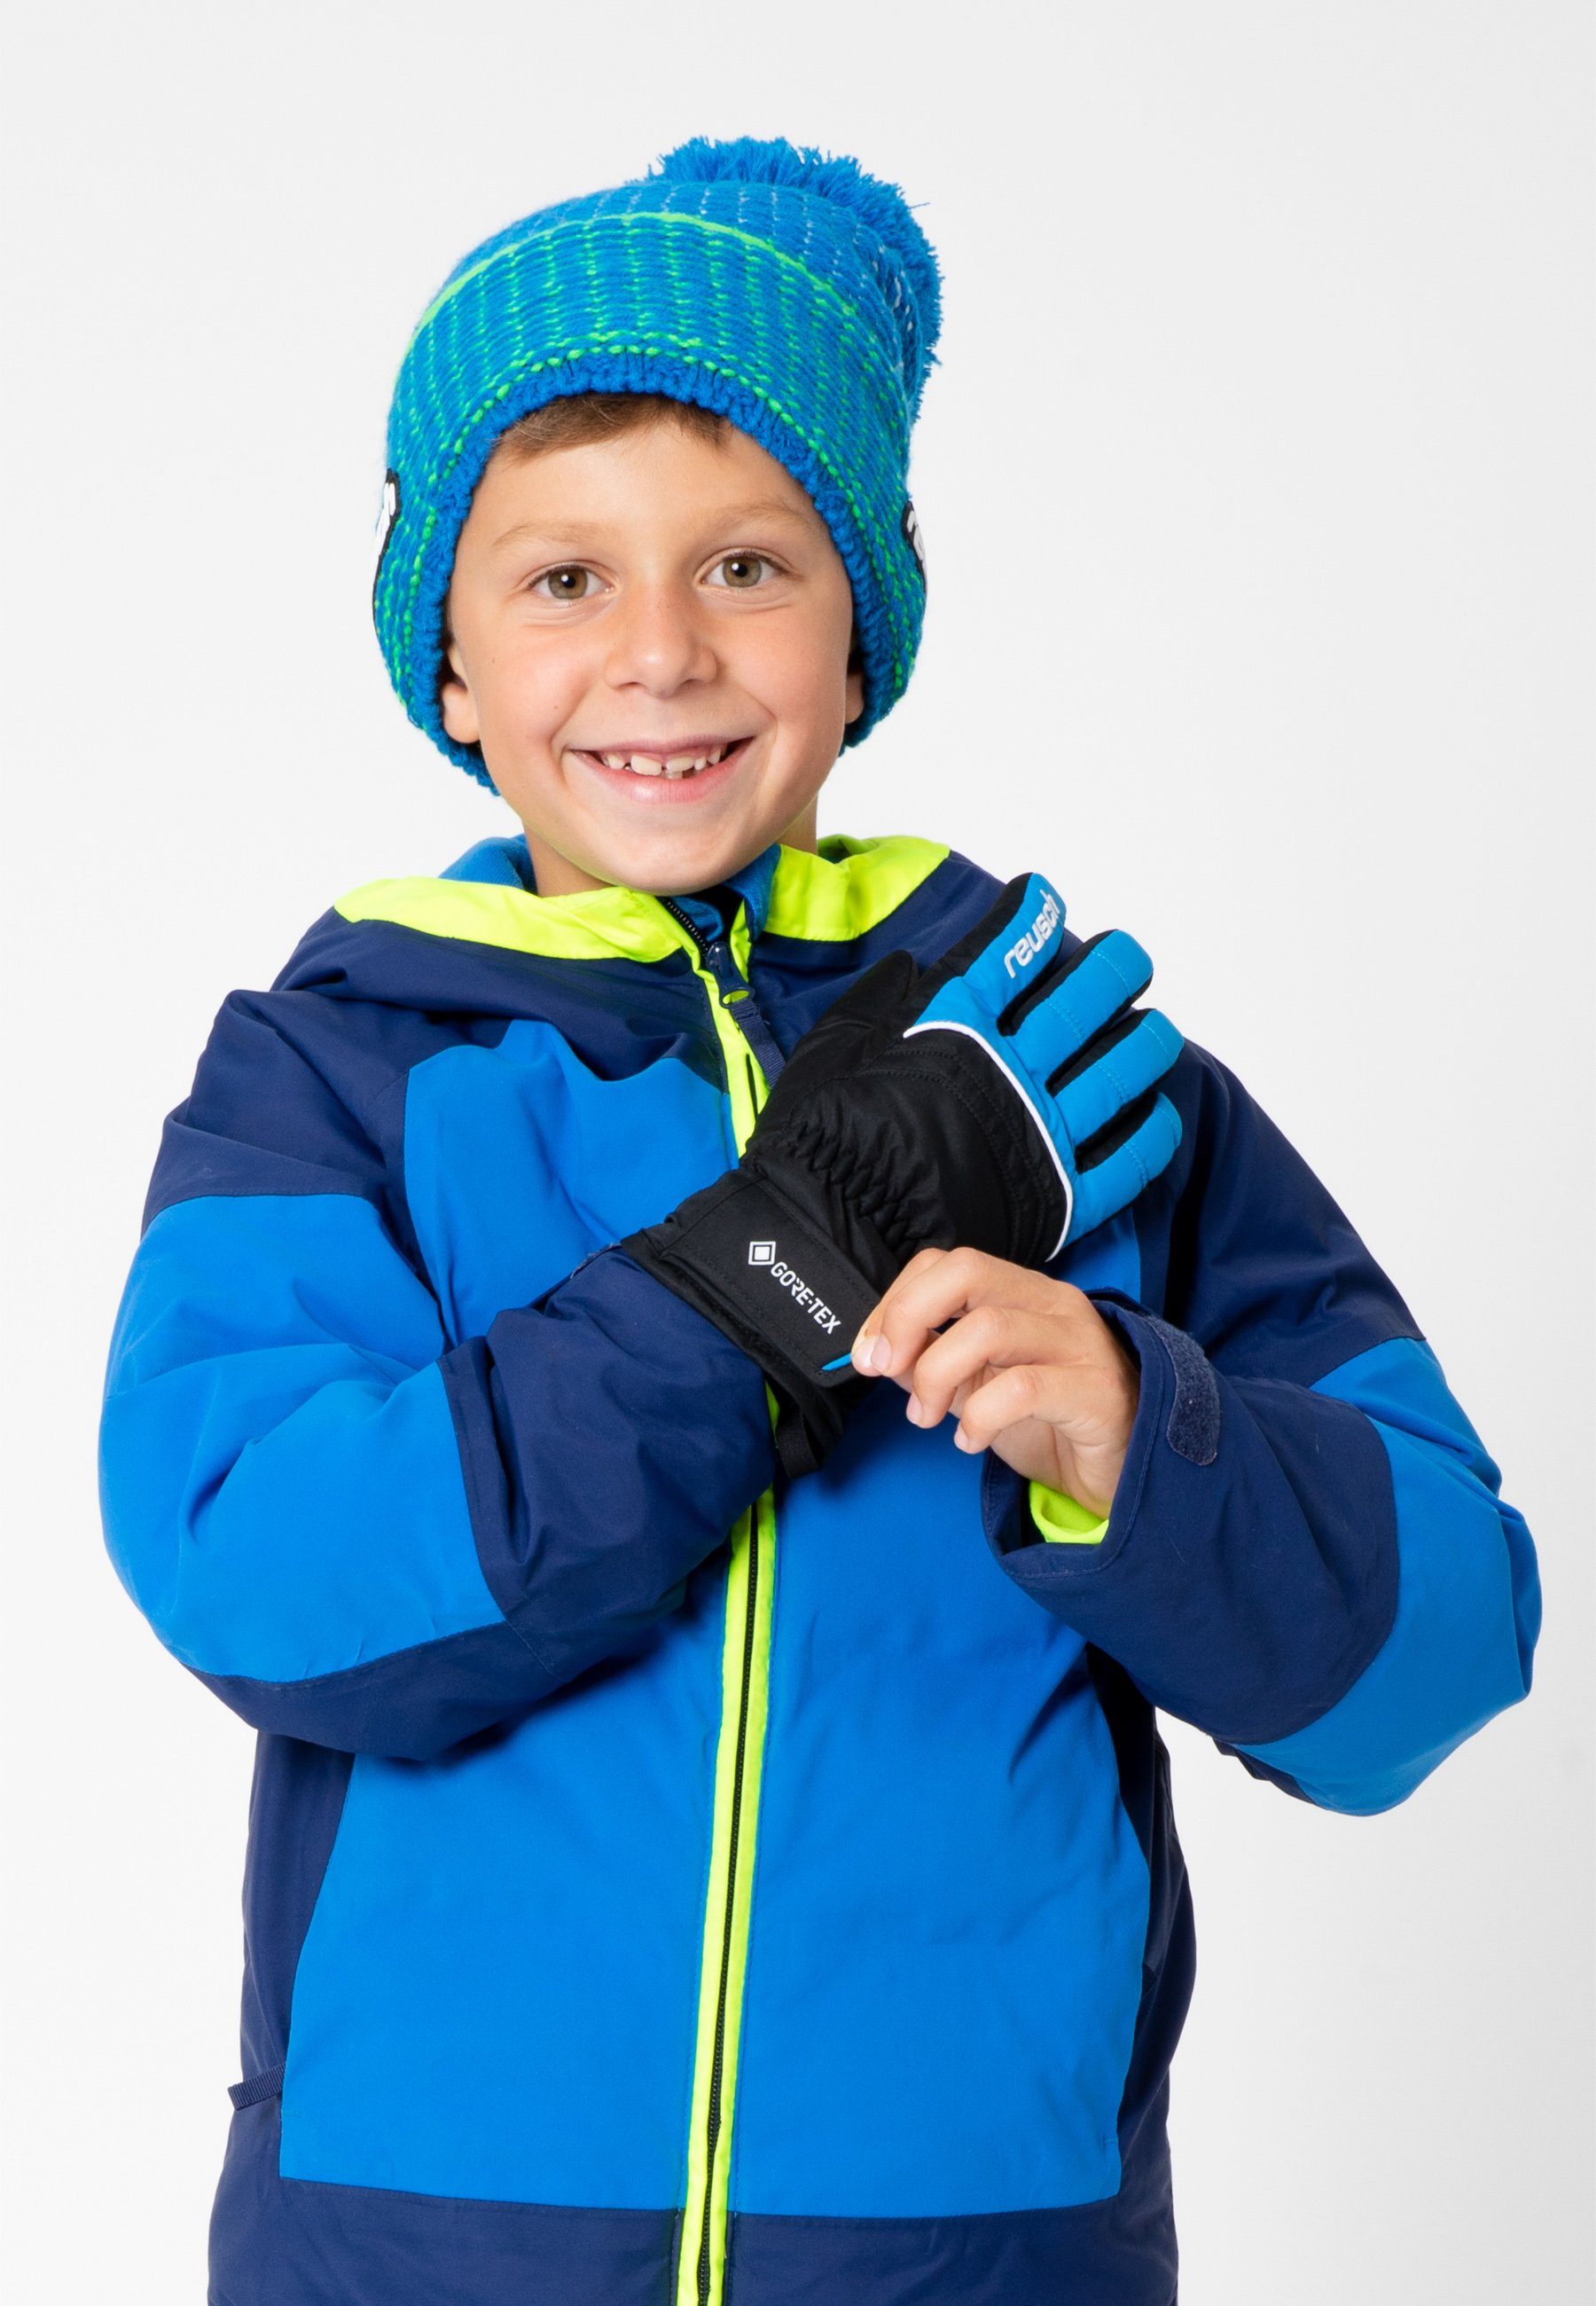 Teddy GORE-TEX wasserdichter mit blau-schwarz Skihandschuhe Reusch Funktionsmembran